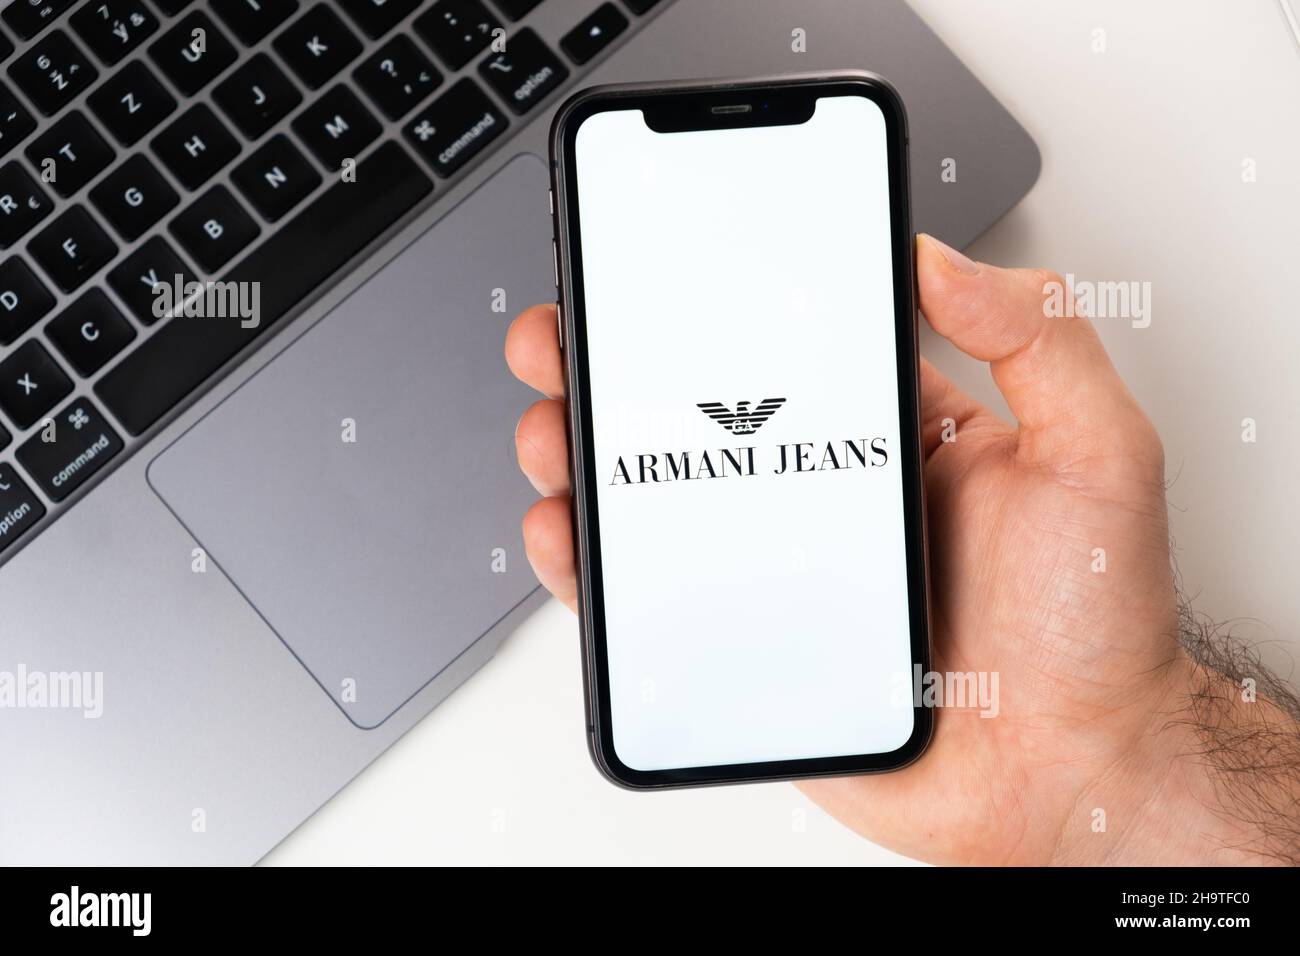 Armani jeans immagini e fotografie stock ad alta risoluzione - Alamy